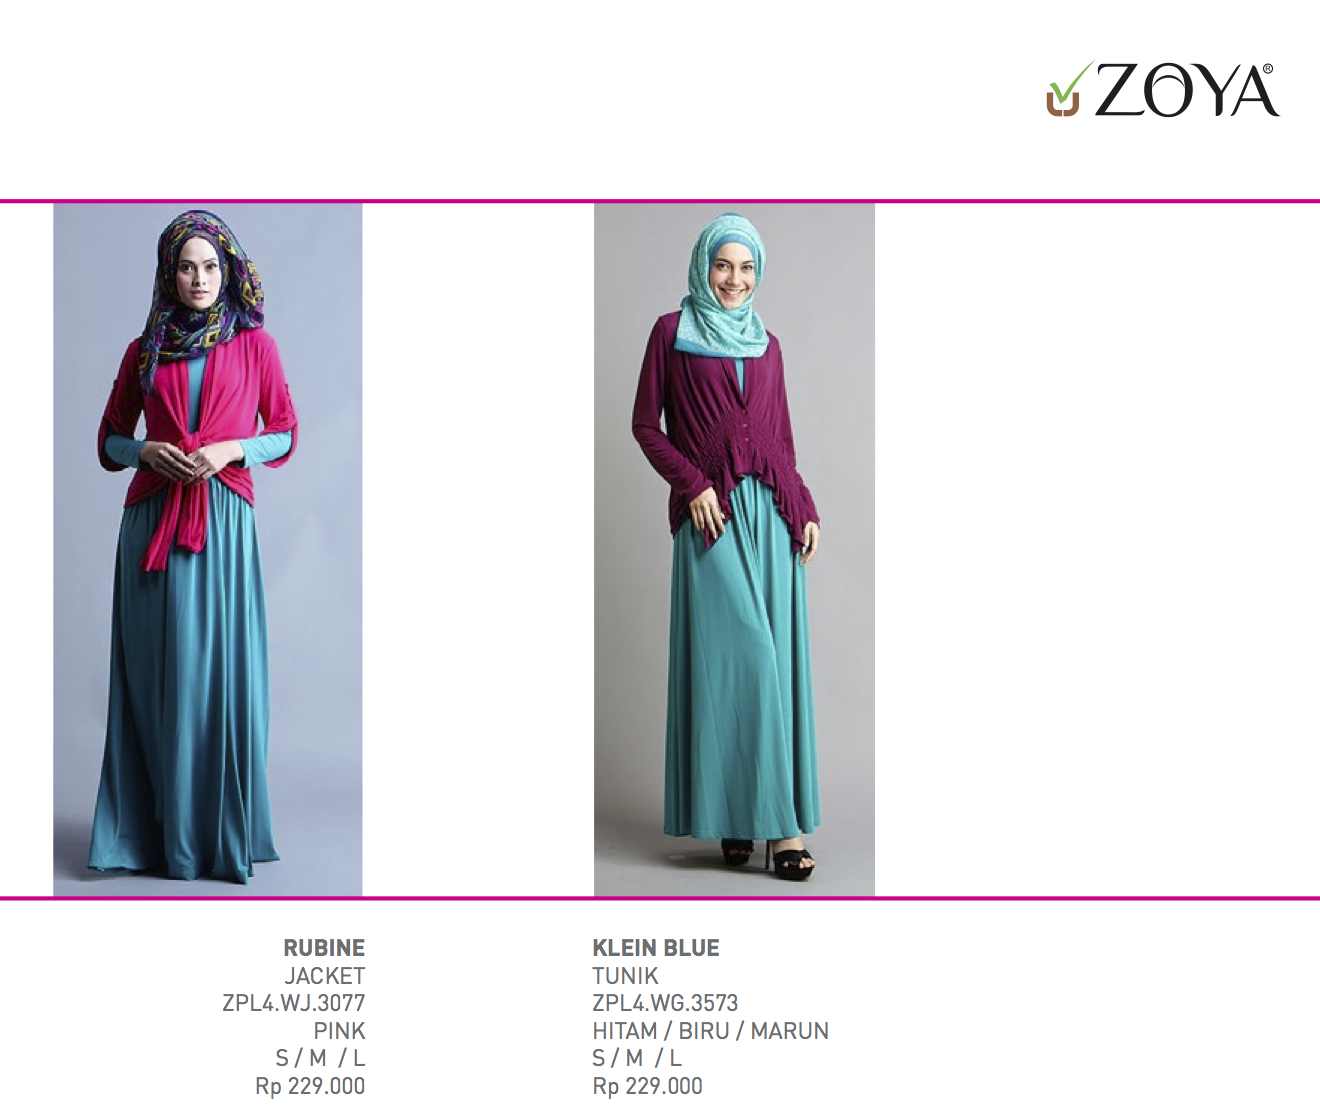 Produk Katalog ZOYA Edisi K2A-2013  Zoya Kudus